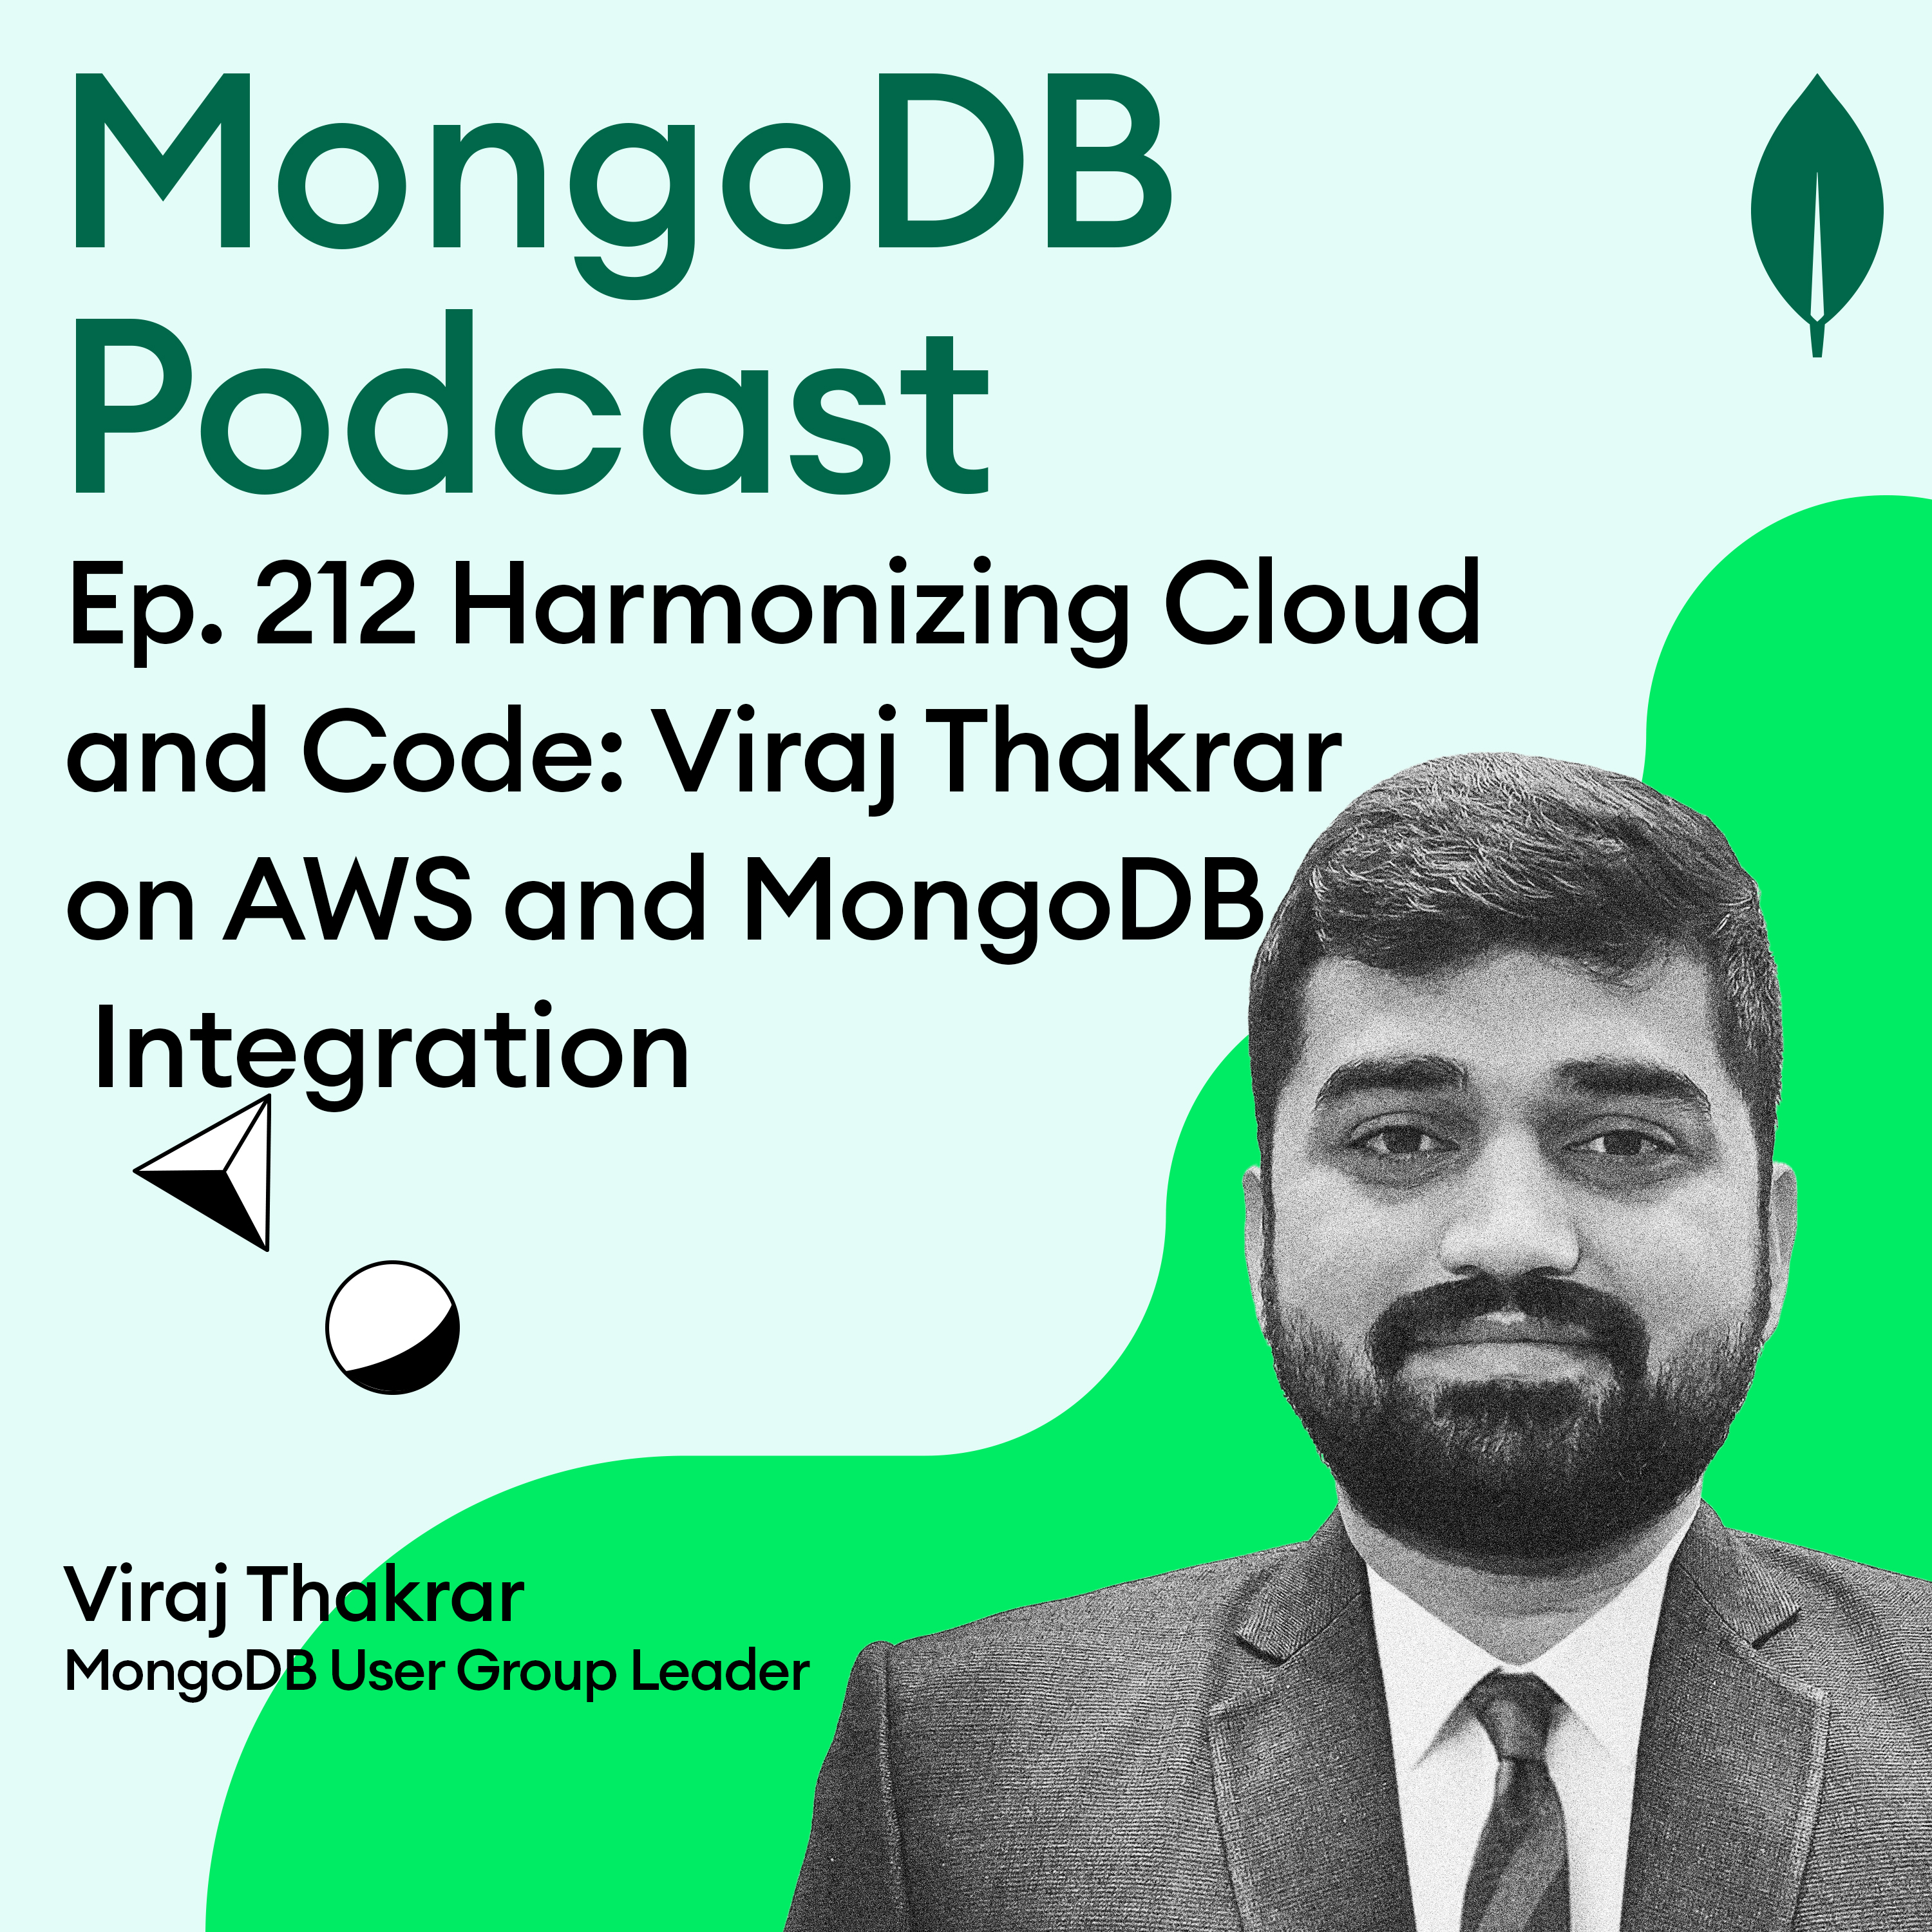 Ep. 212 Harmonizing Cloud and Code: Viraj Thakrar on AWS and MongoDB Integration